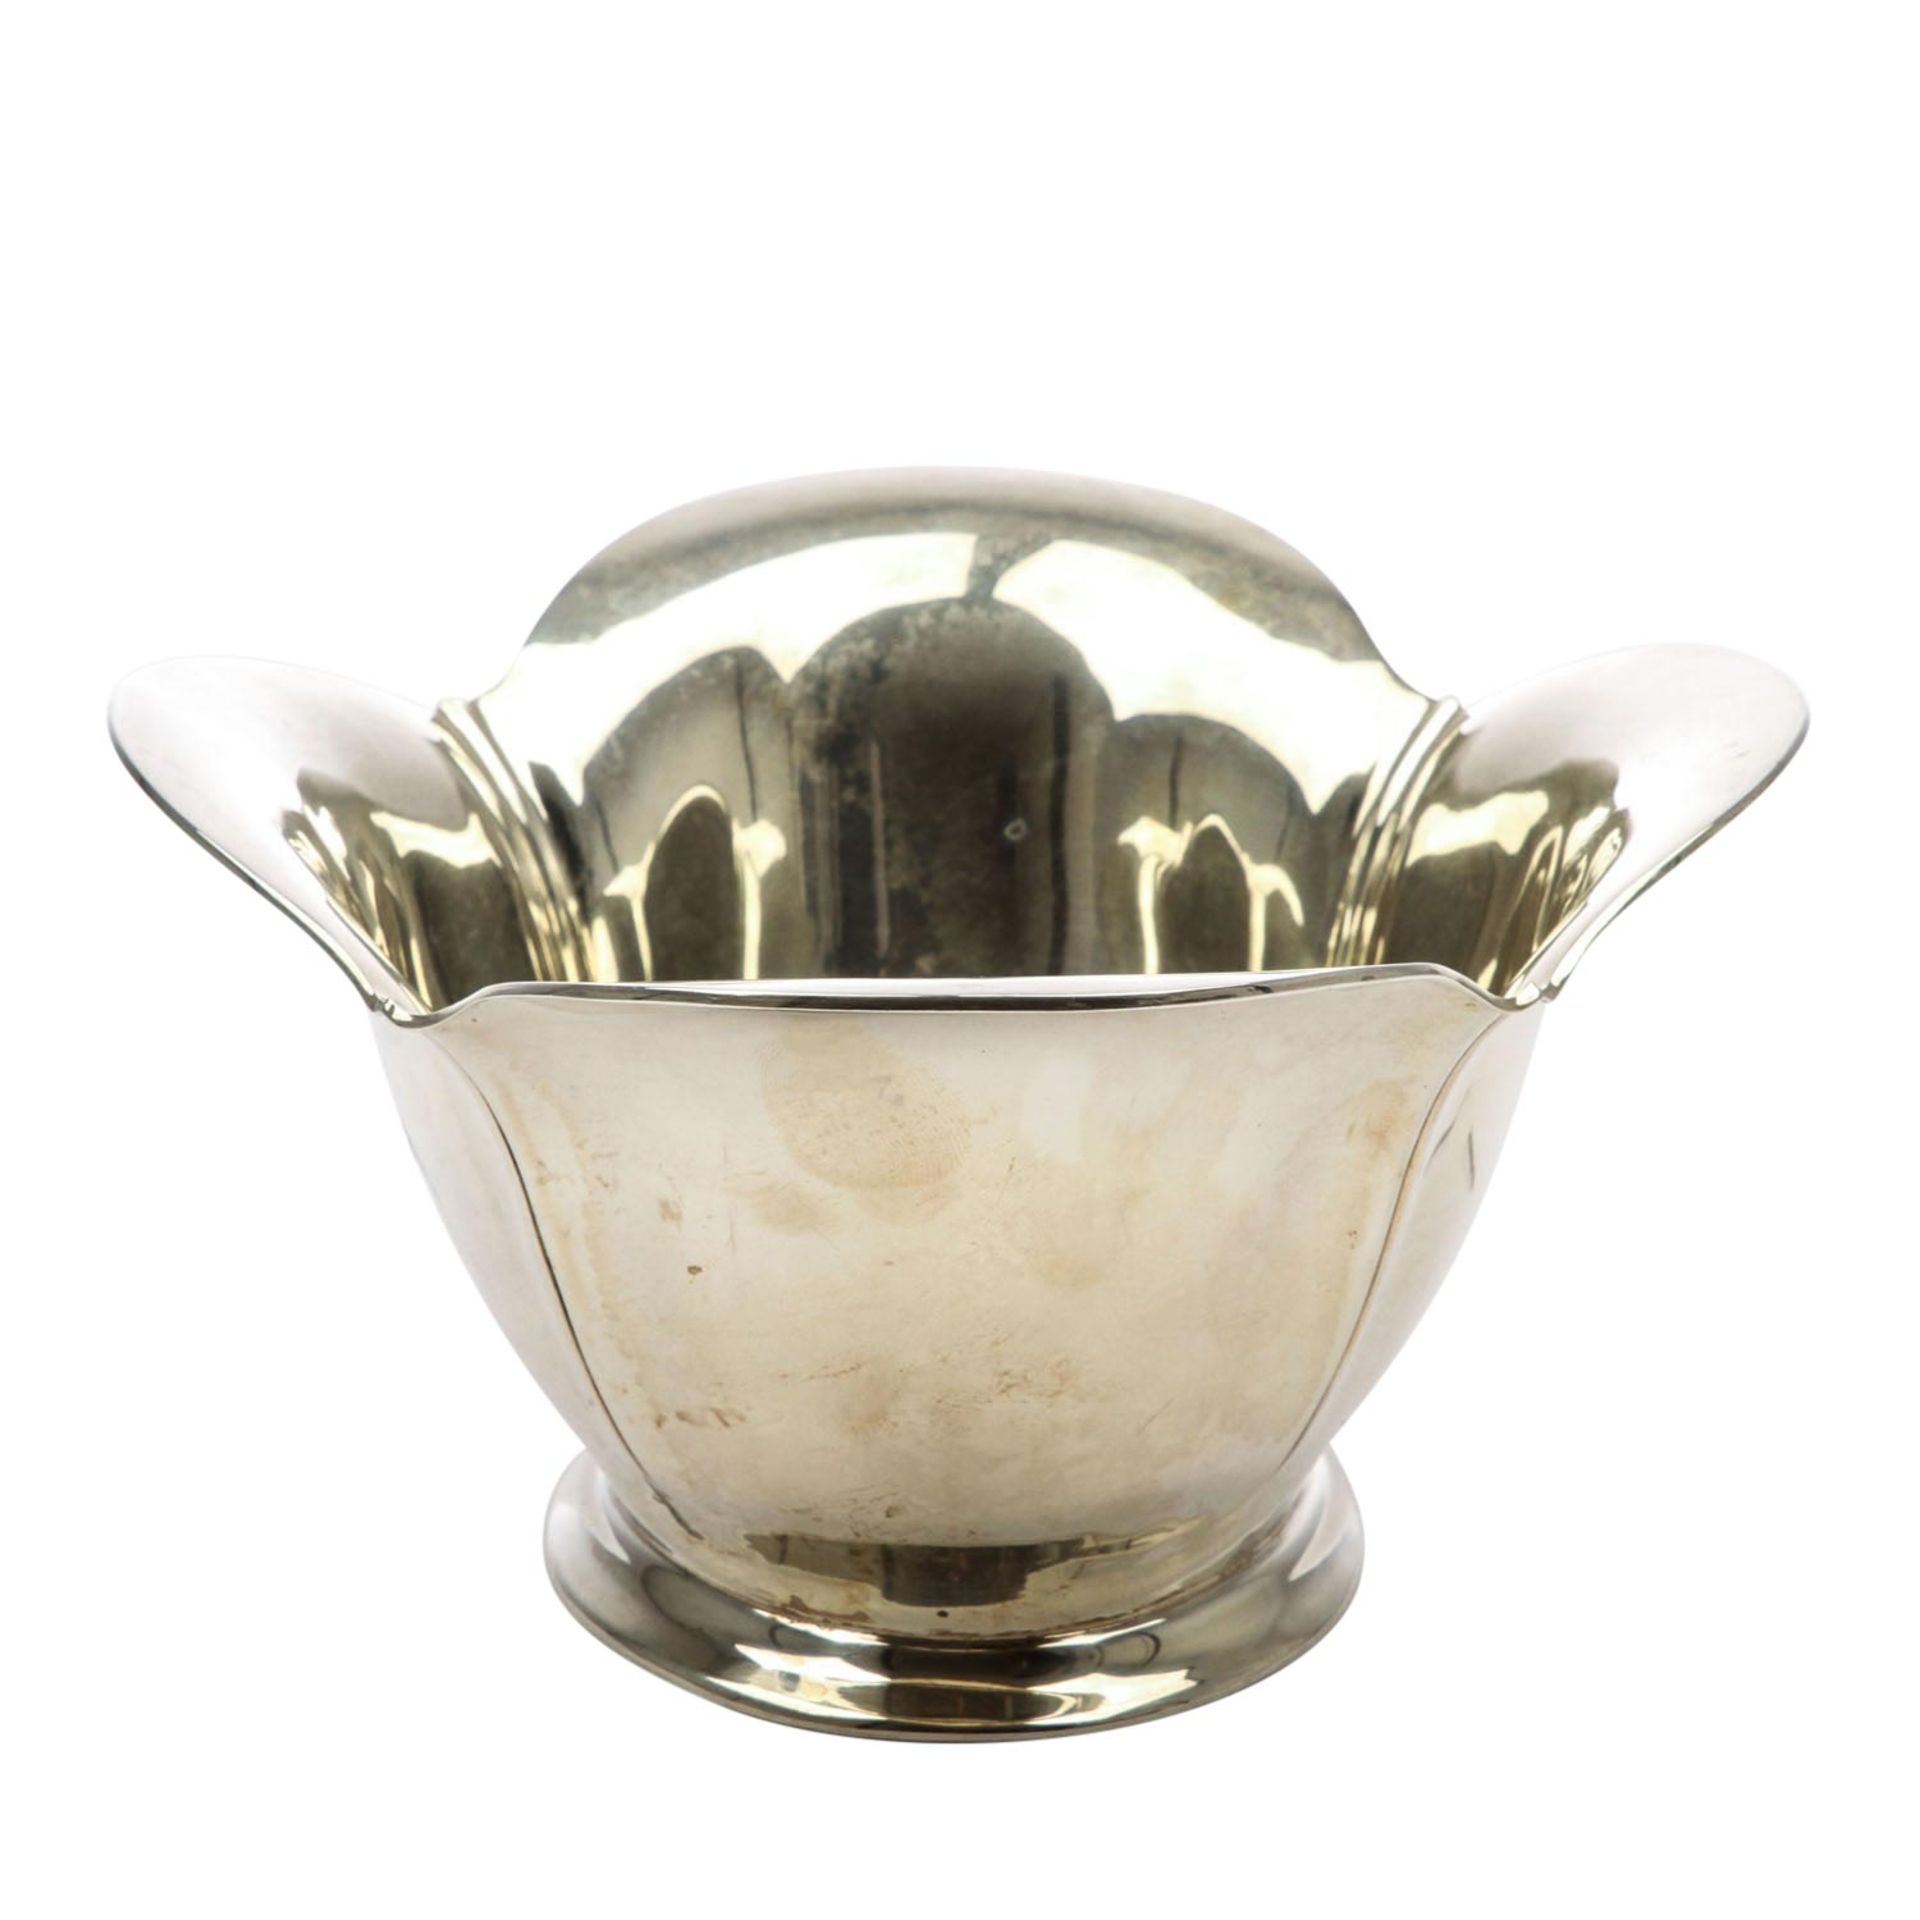 ERNST MENNER Schale, 925 Silber, 20. Jhd.Ovale Form mit hochgezogener, mehrpassiger Wandung, L. - Image 3 of 7